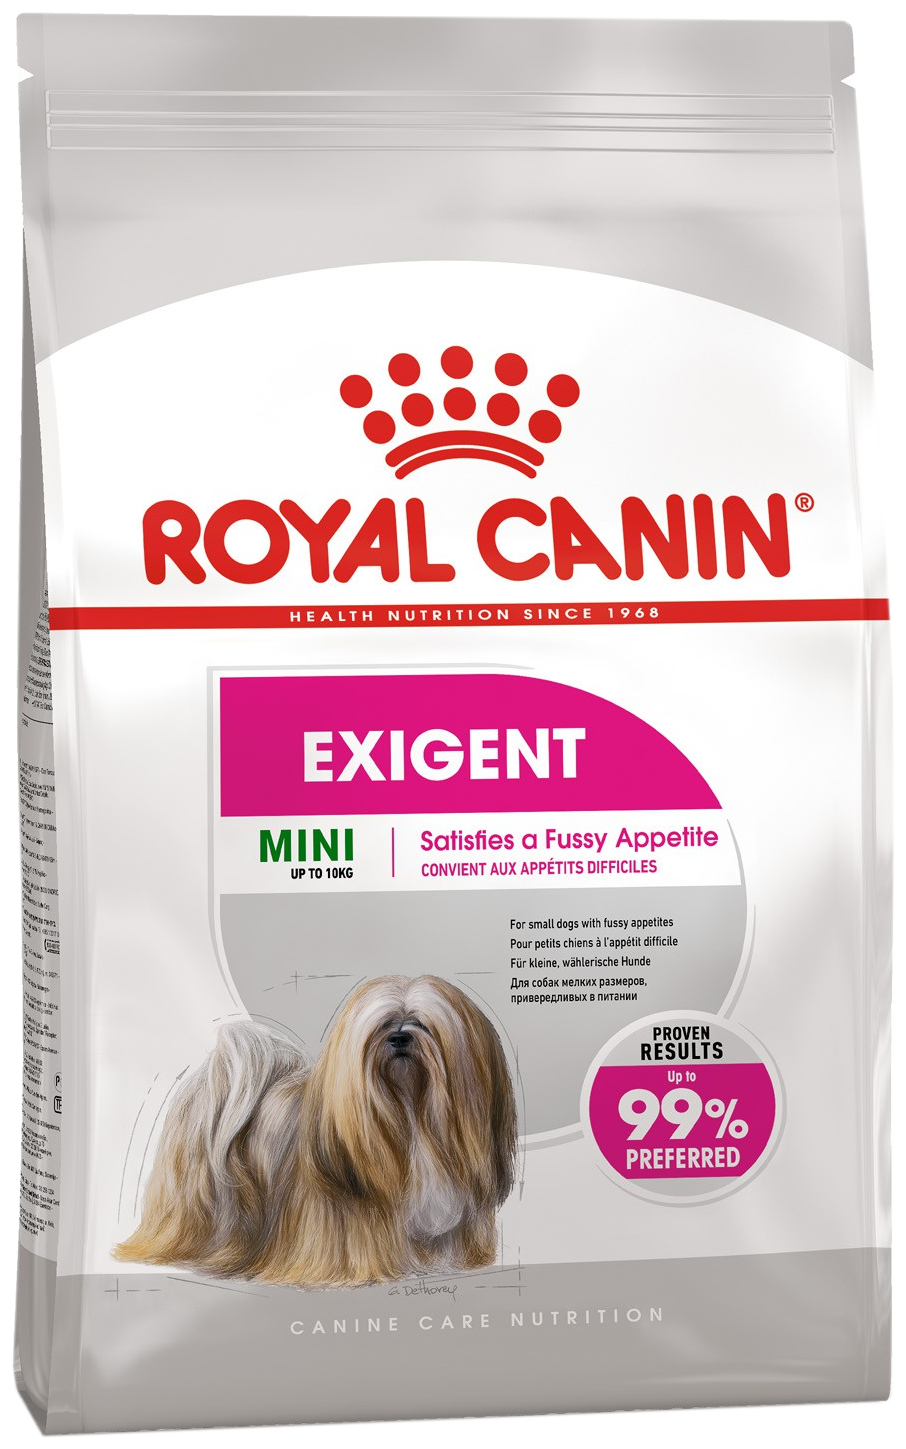 Сухой корм Royal Canin для взрослых собак мелких размеров (весом от 1 до 10 кг), привередливых в питании, от 10 месяцев до 12 лет 1 уп. х 1 шт. х 3 кг